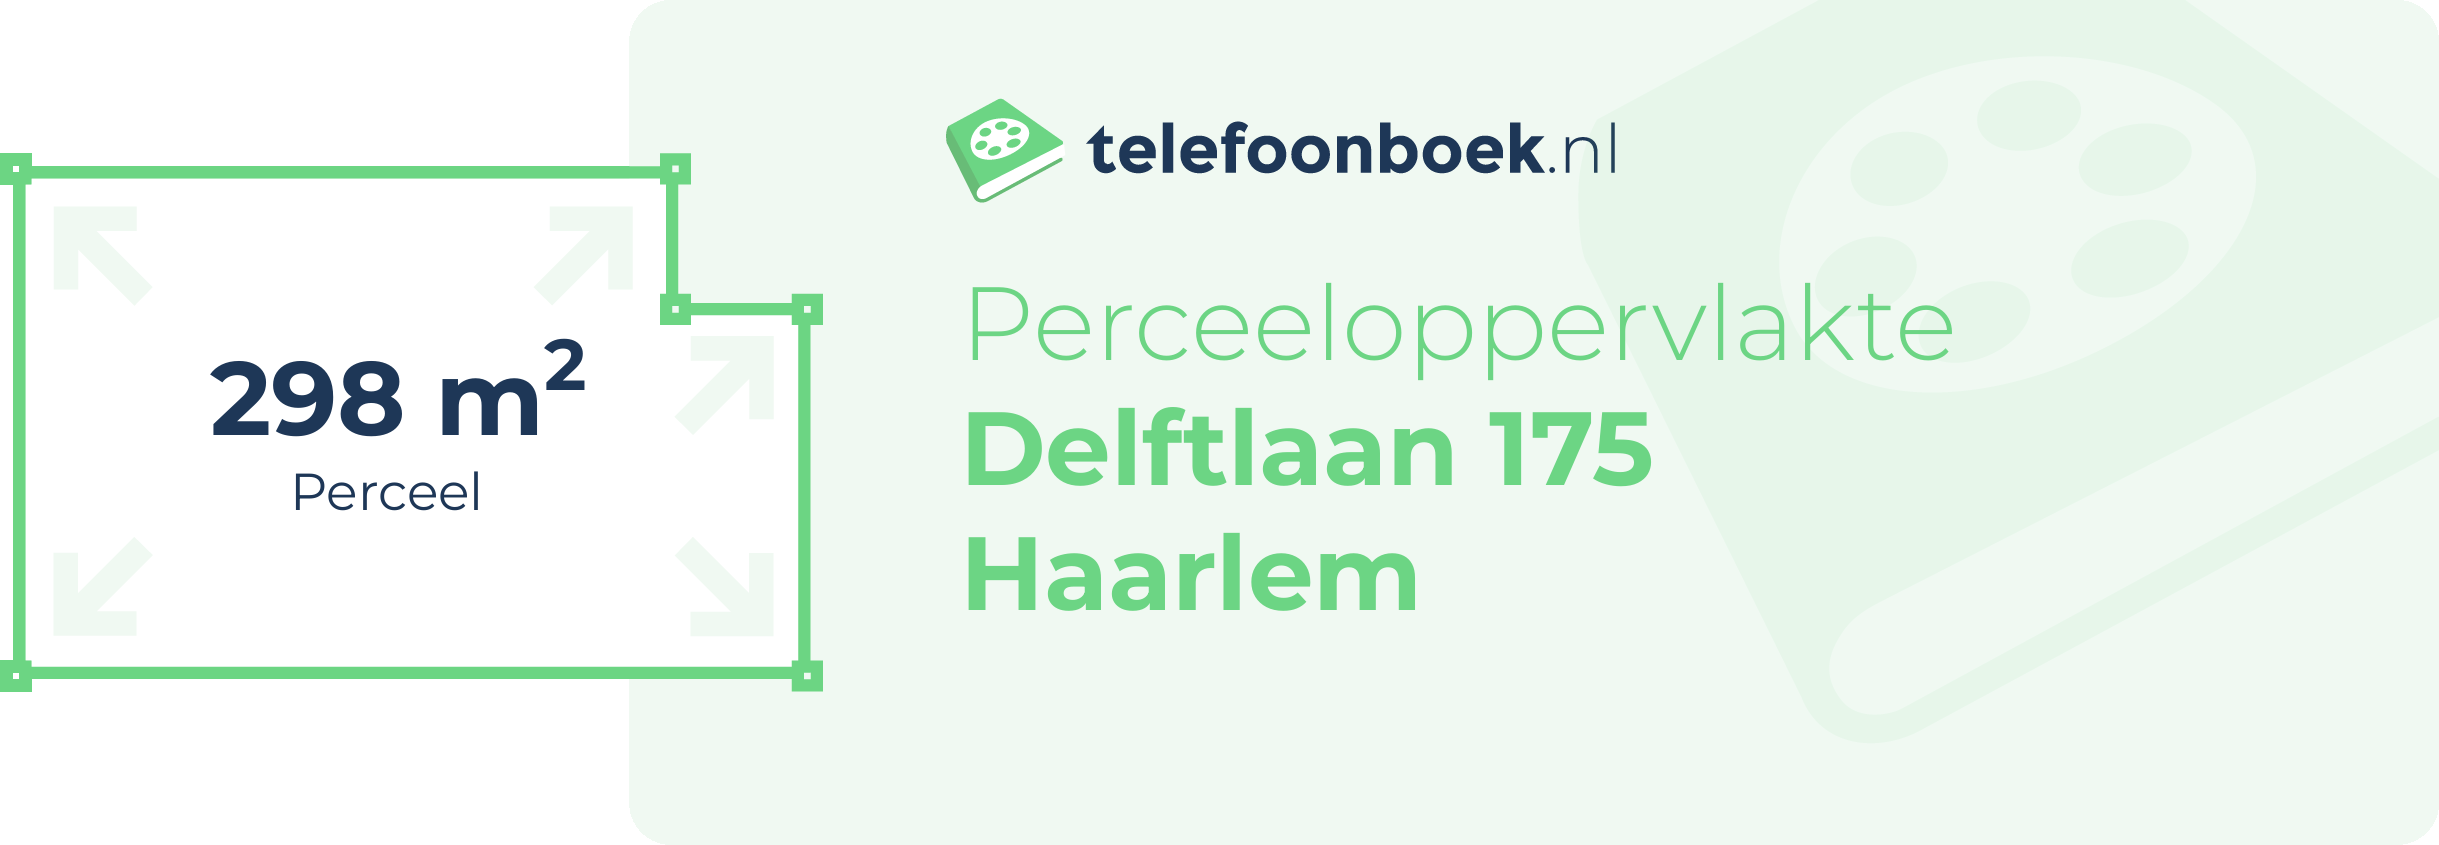 Perceeloppervlakte Delftlaan 175 Haarlem